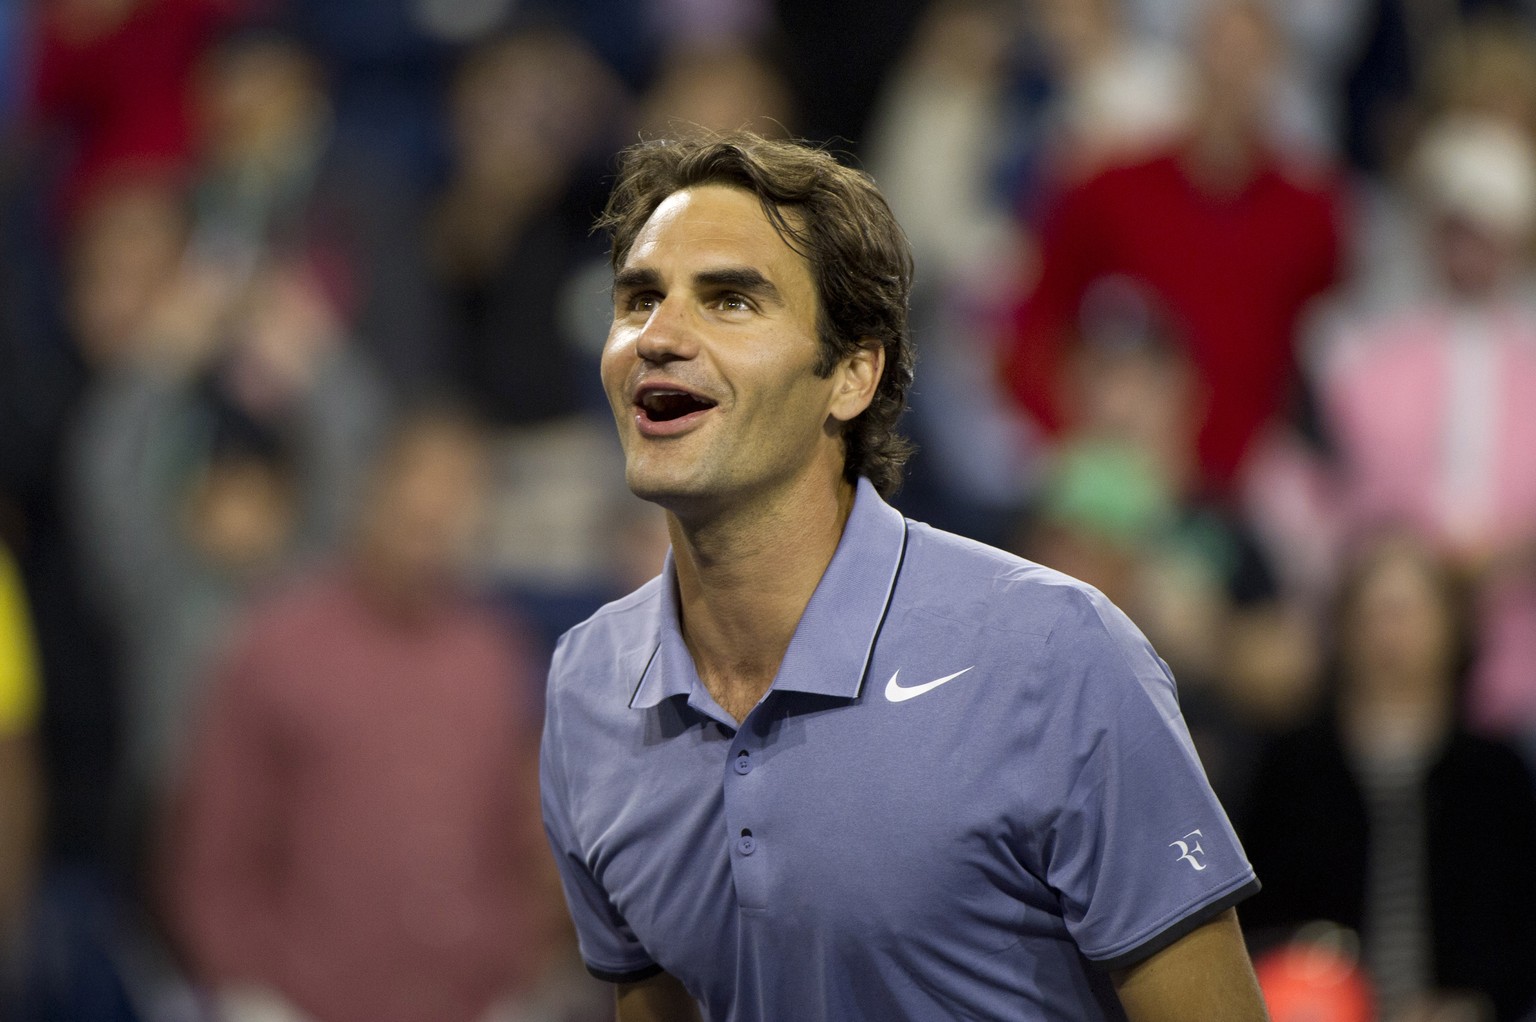 Kann entspannt in die nächsten Wochen blicken: Roger Federer.